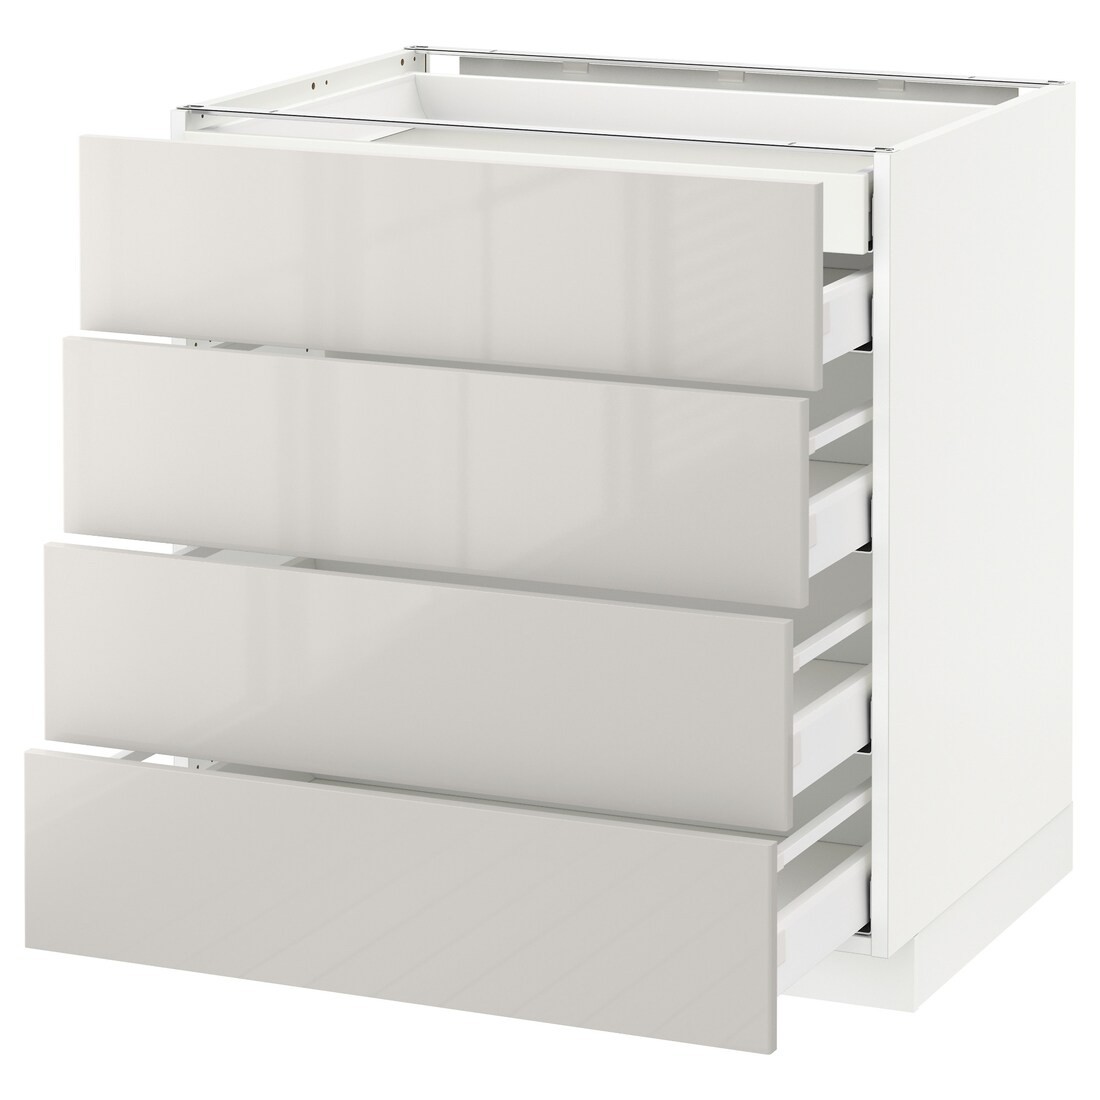 IKEA METOD МЕТОД / MAXIMERA МАКСІМЕРА Підлогова шафа з шухлядами, білий / Ringhult світло-сірий, 80x60 см 29141740 291.417.40